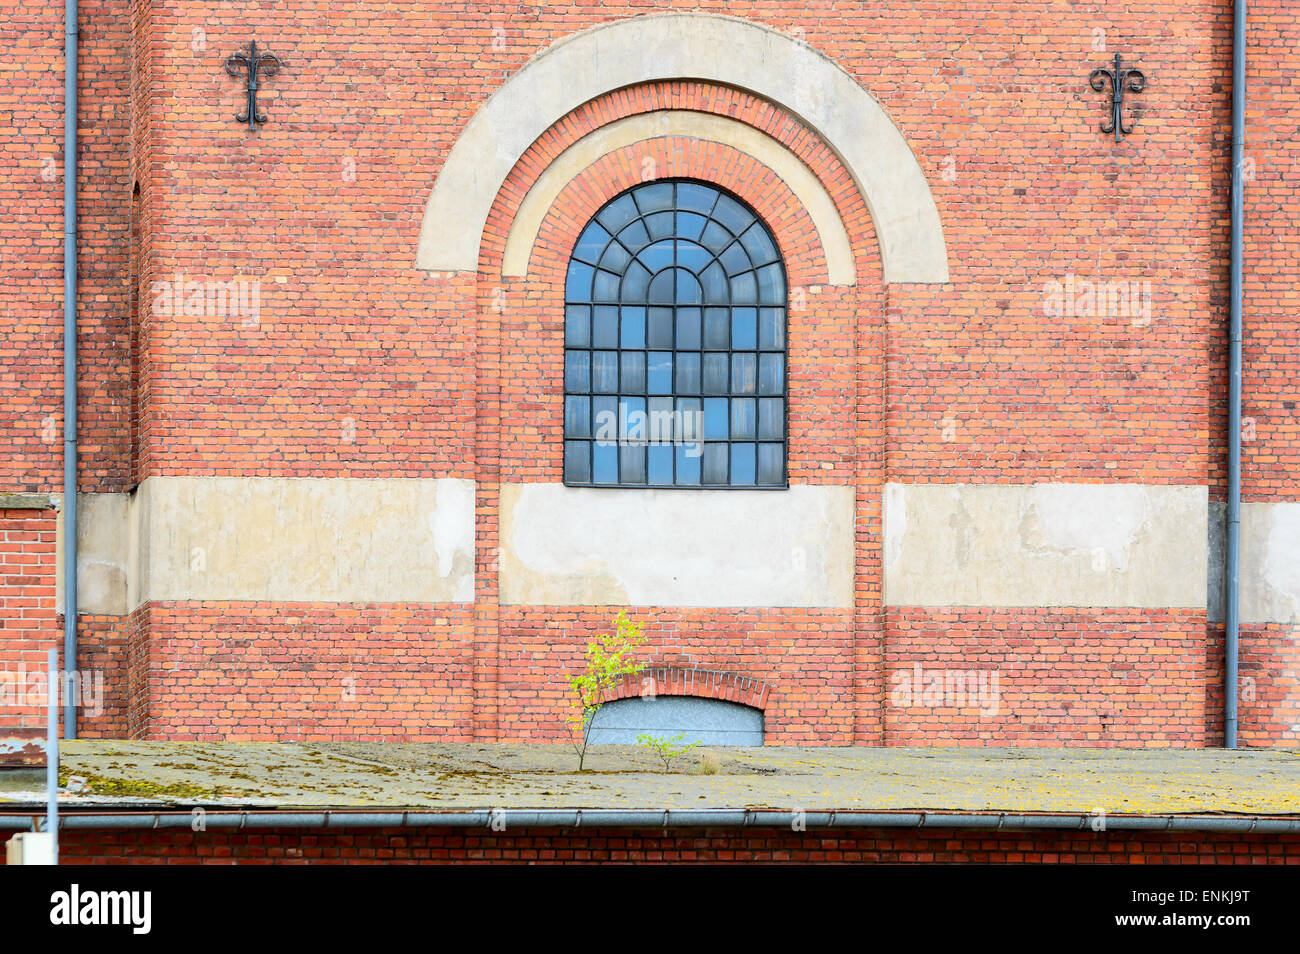 Vieux bâtiment en brique dans une zone industrielle. Un bon verre fenêtre avec arche en pierre au-dessus de lui. Petit arbre commencent à pousser sur le toit de bui Banque D'Images